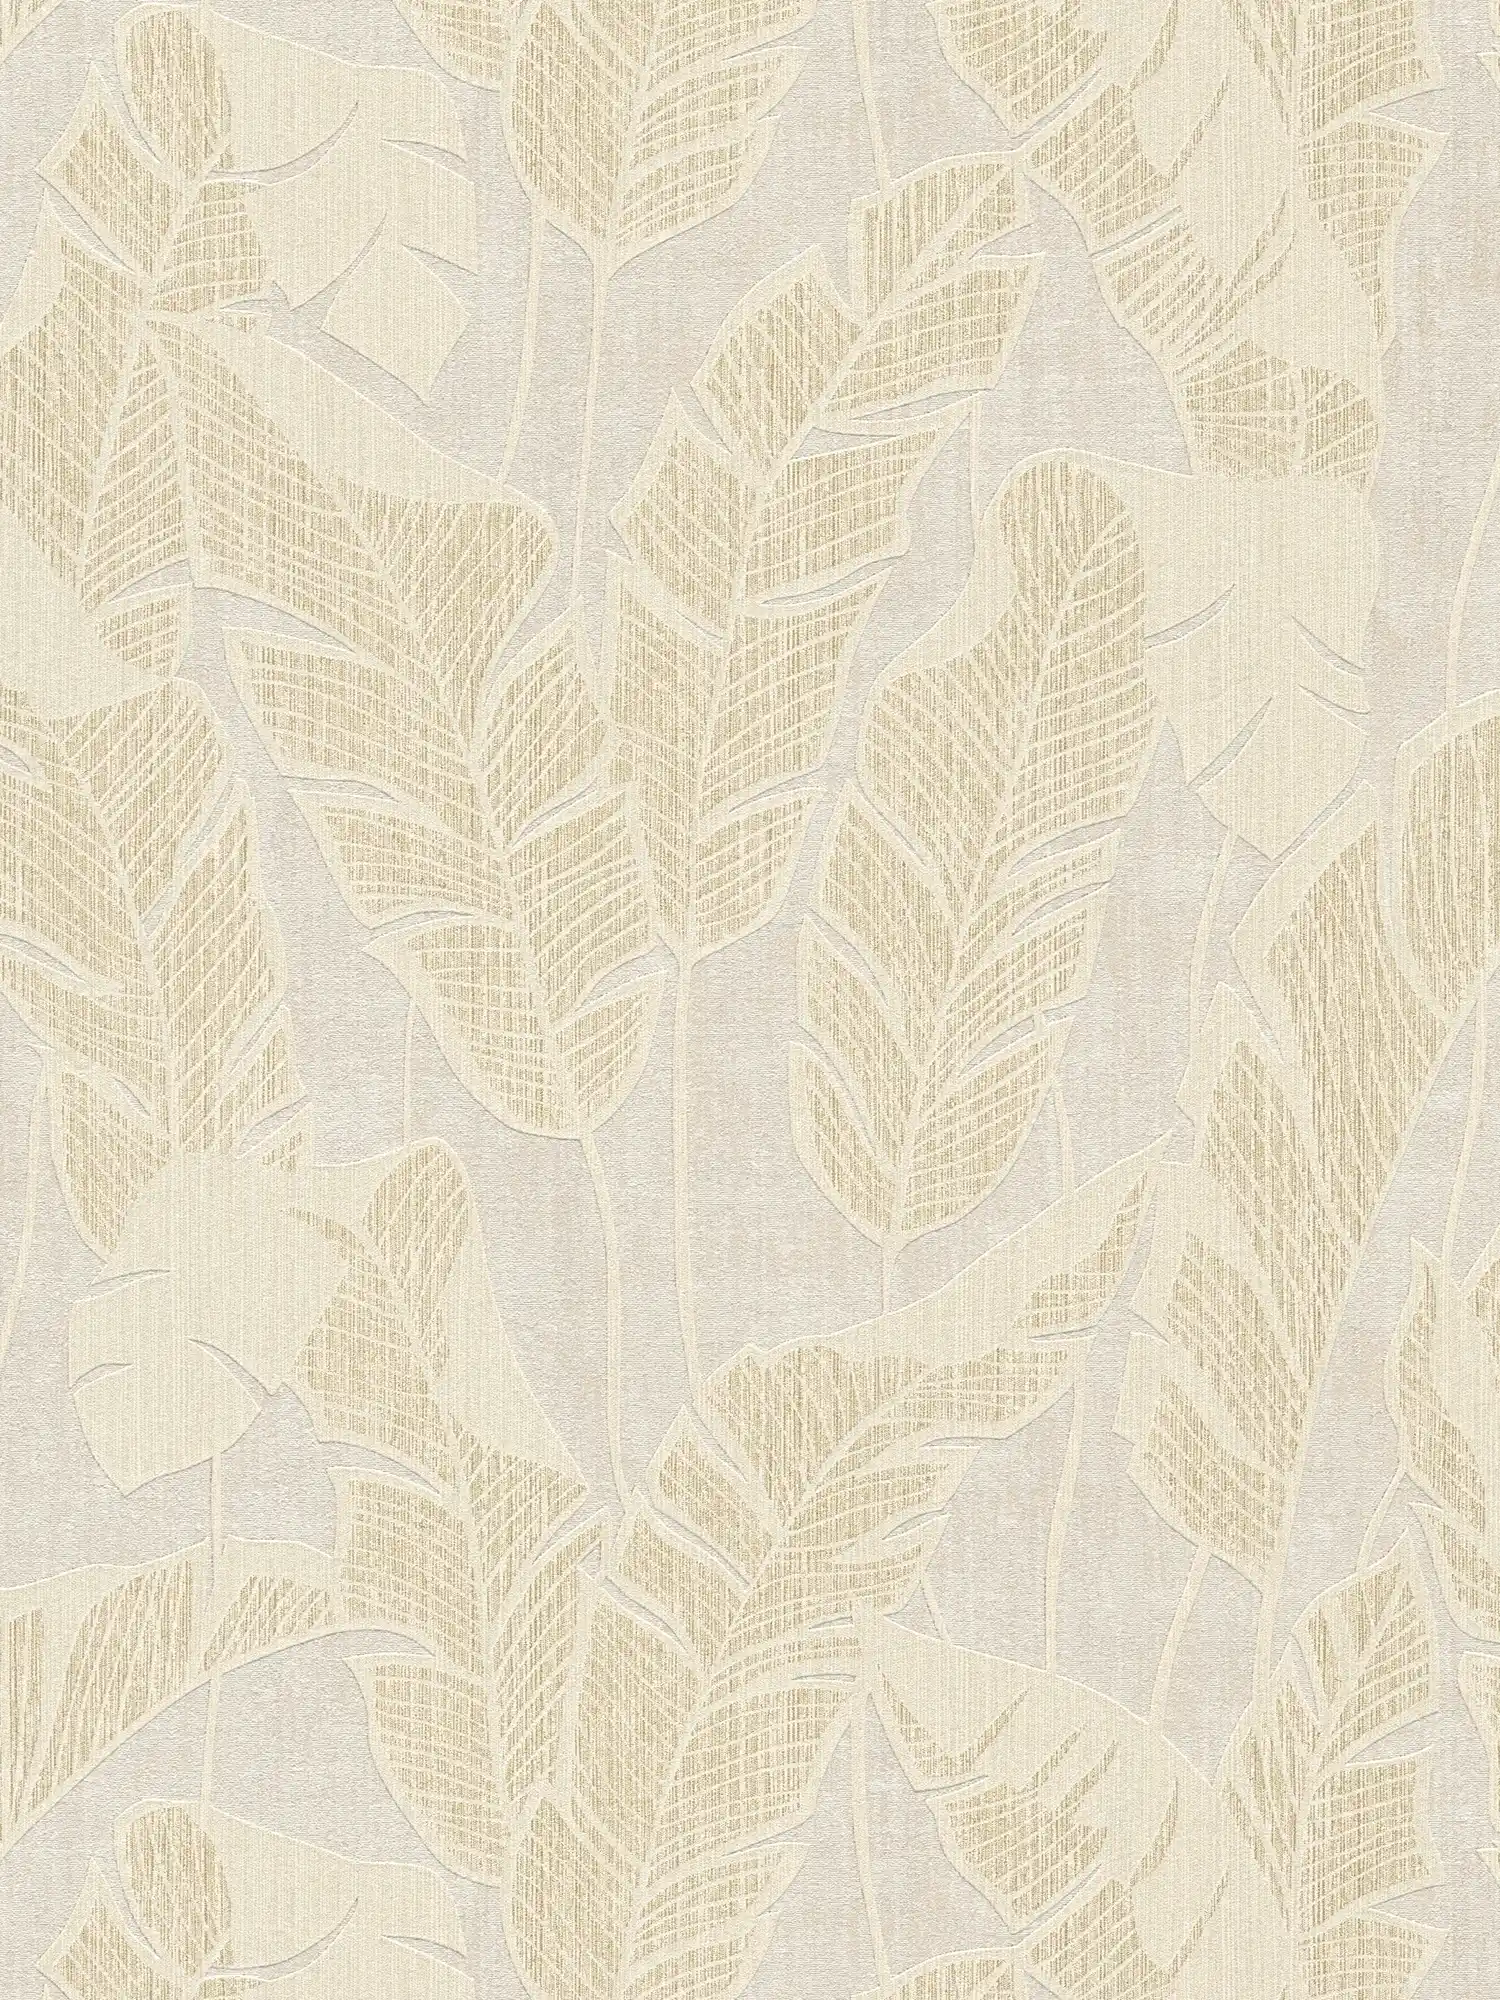 papier peint en papier aux motifs de jungle dans des couleurs douces - blanc, beige, or
